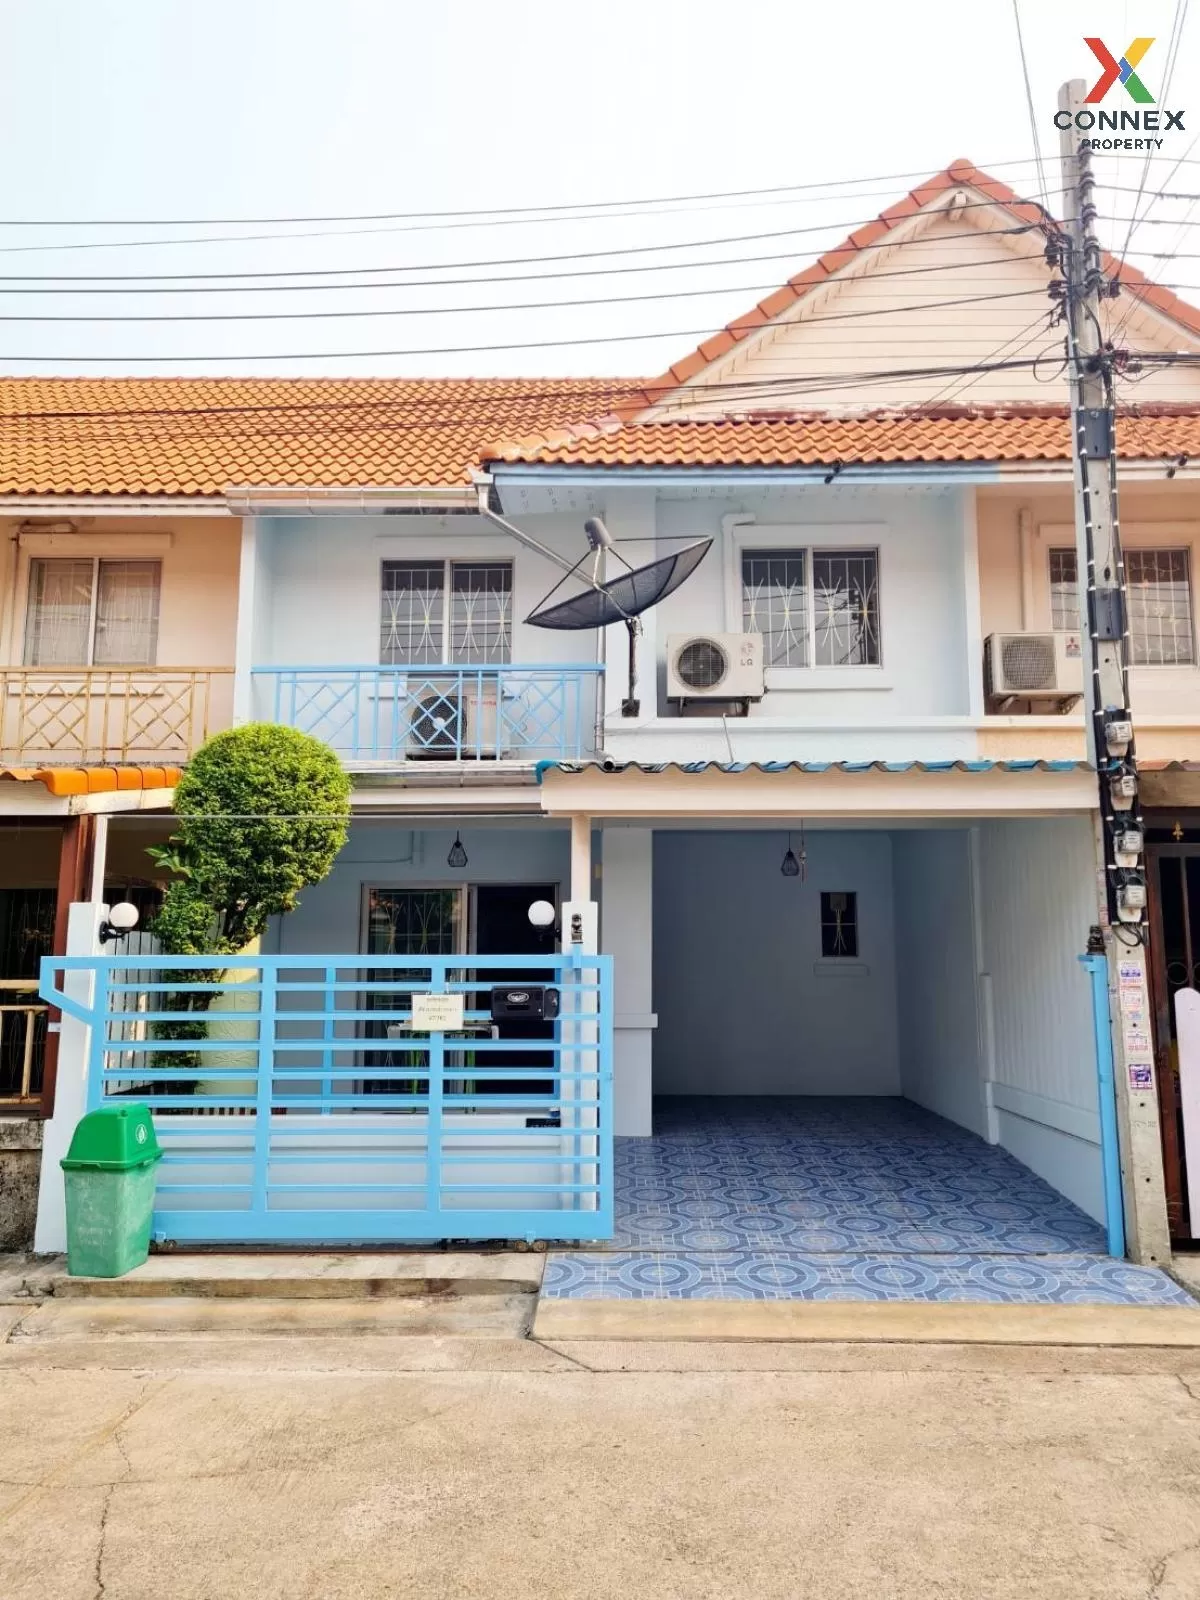 For Sale Townhouse/Townhome  , Baan Pruksa 33 Bangbuathong , Bang Khu Rat , Bang Bua Thong , Nonthaburi , CX-83449